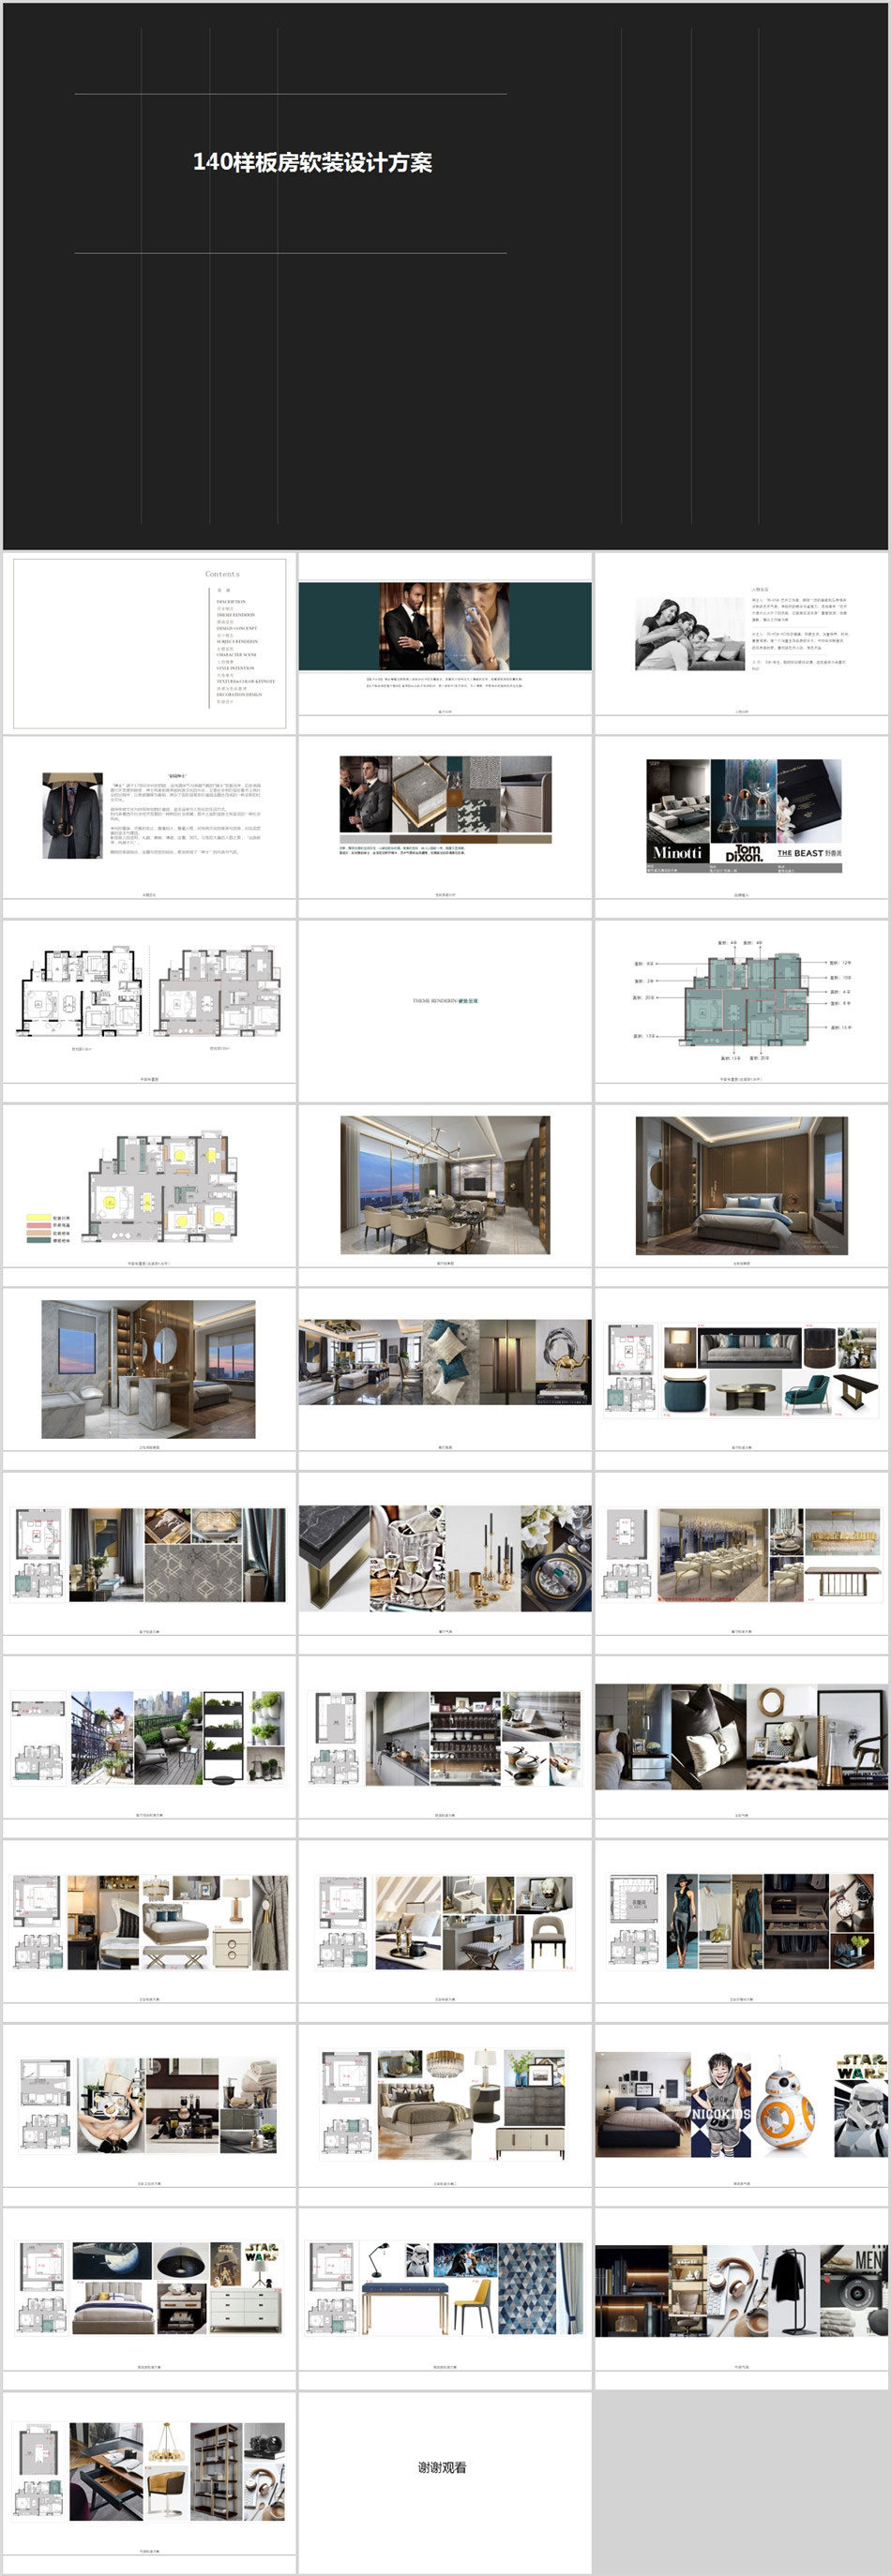 室内家装现代都市软装陈设概念设计方案PPT文本可编辑模板素材库 第7张